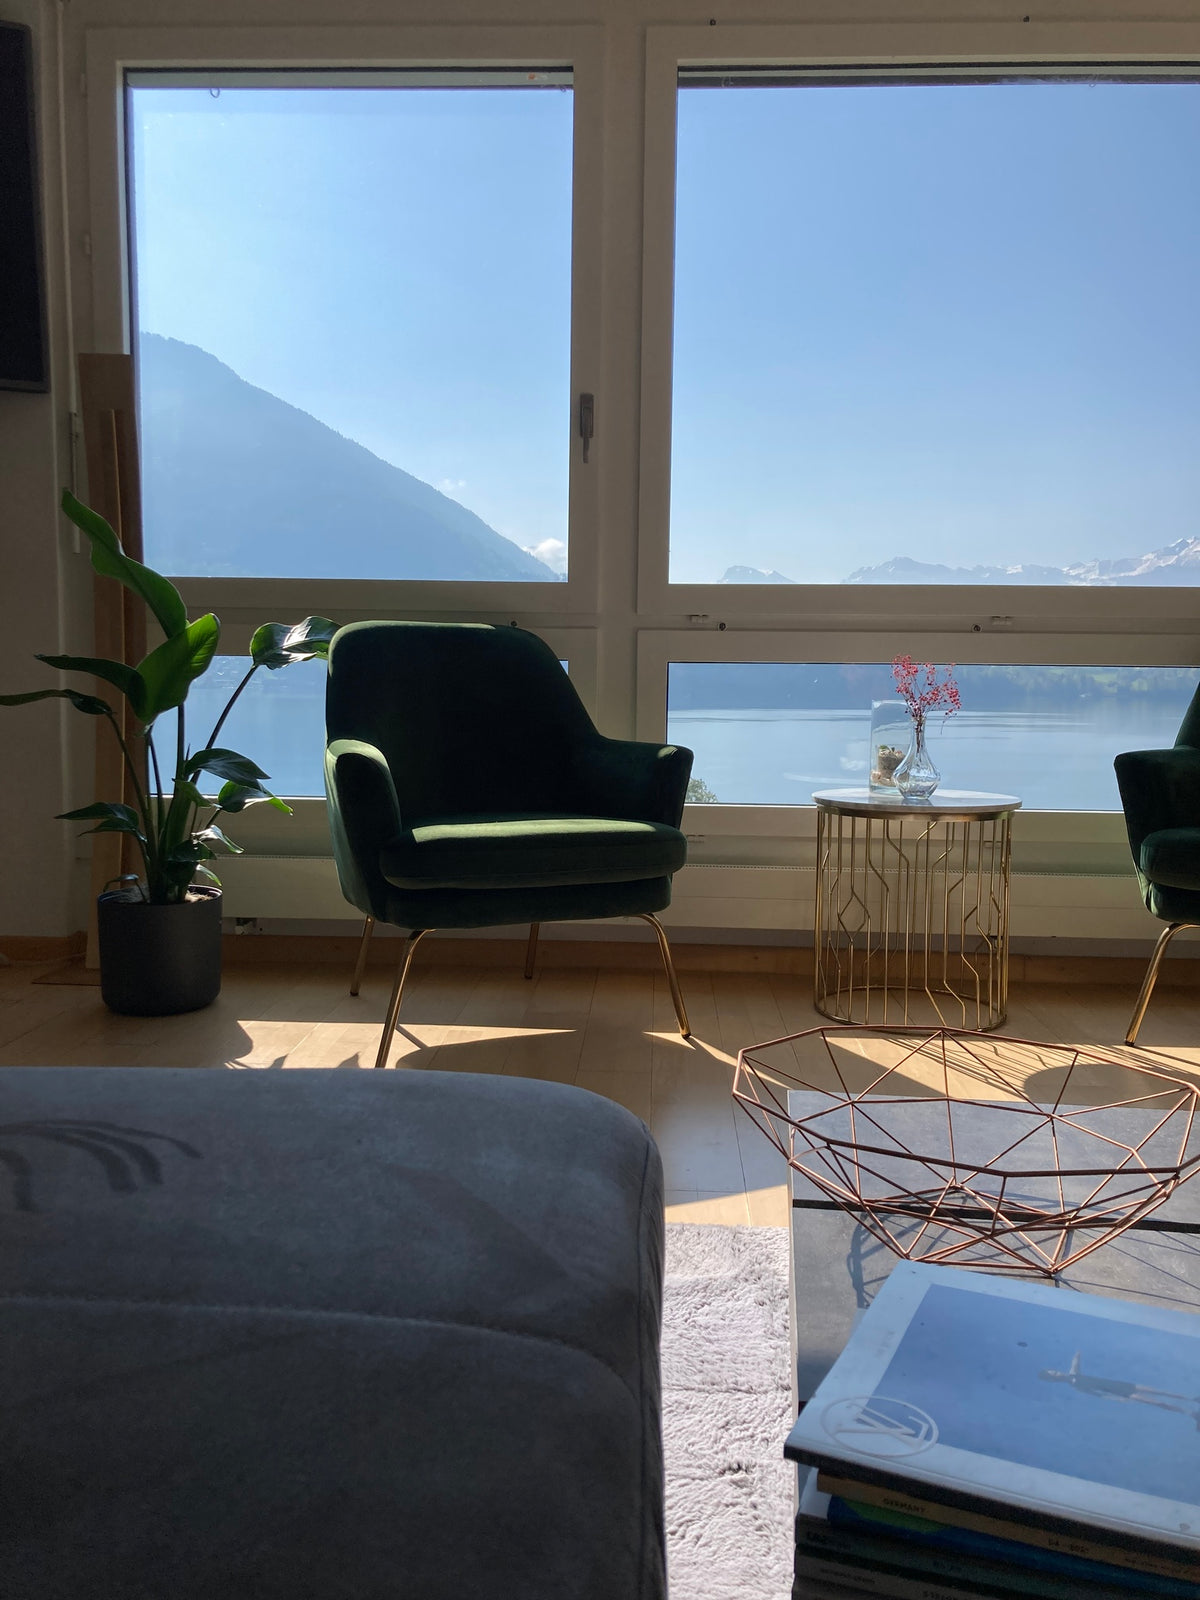 Grüner Sessel und grosse Strelitzie im Wohnzimmer an einer Fensterfront, die den Blick auf den See und Berge freigibt